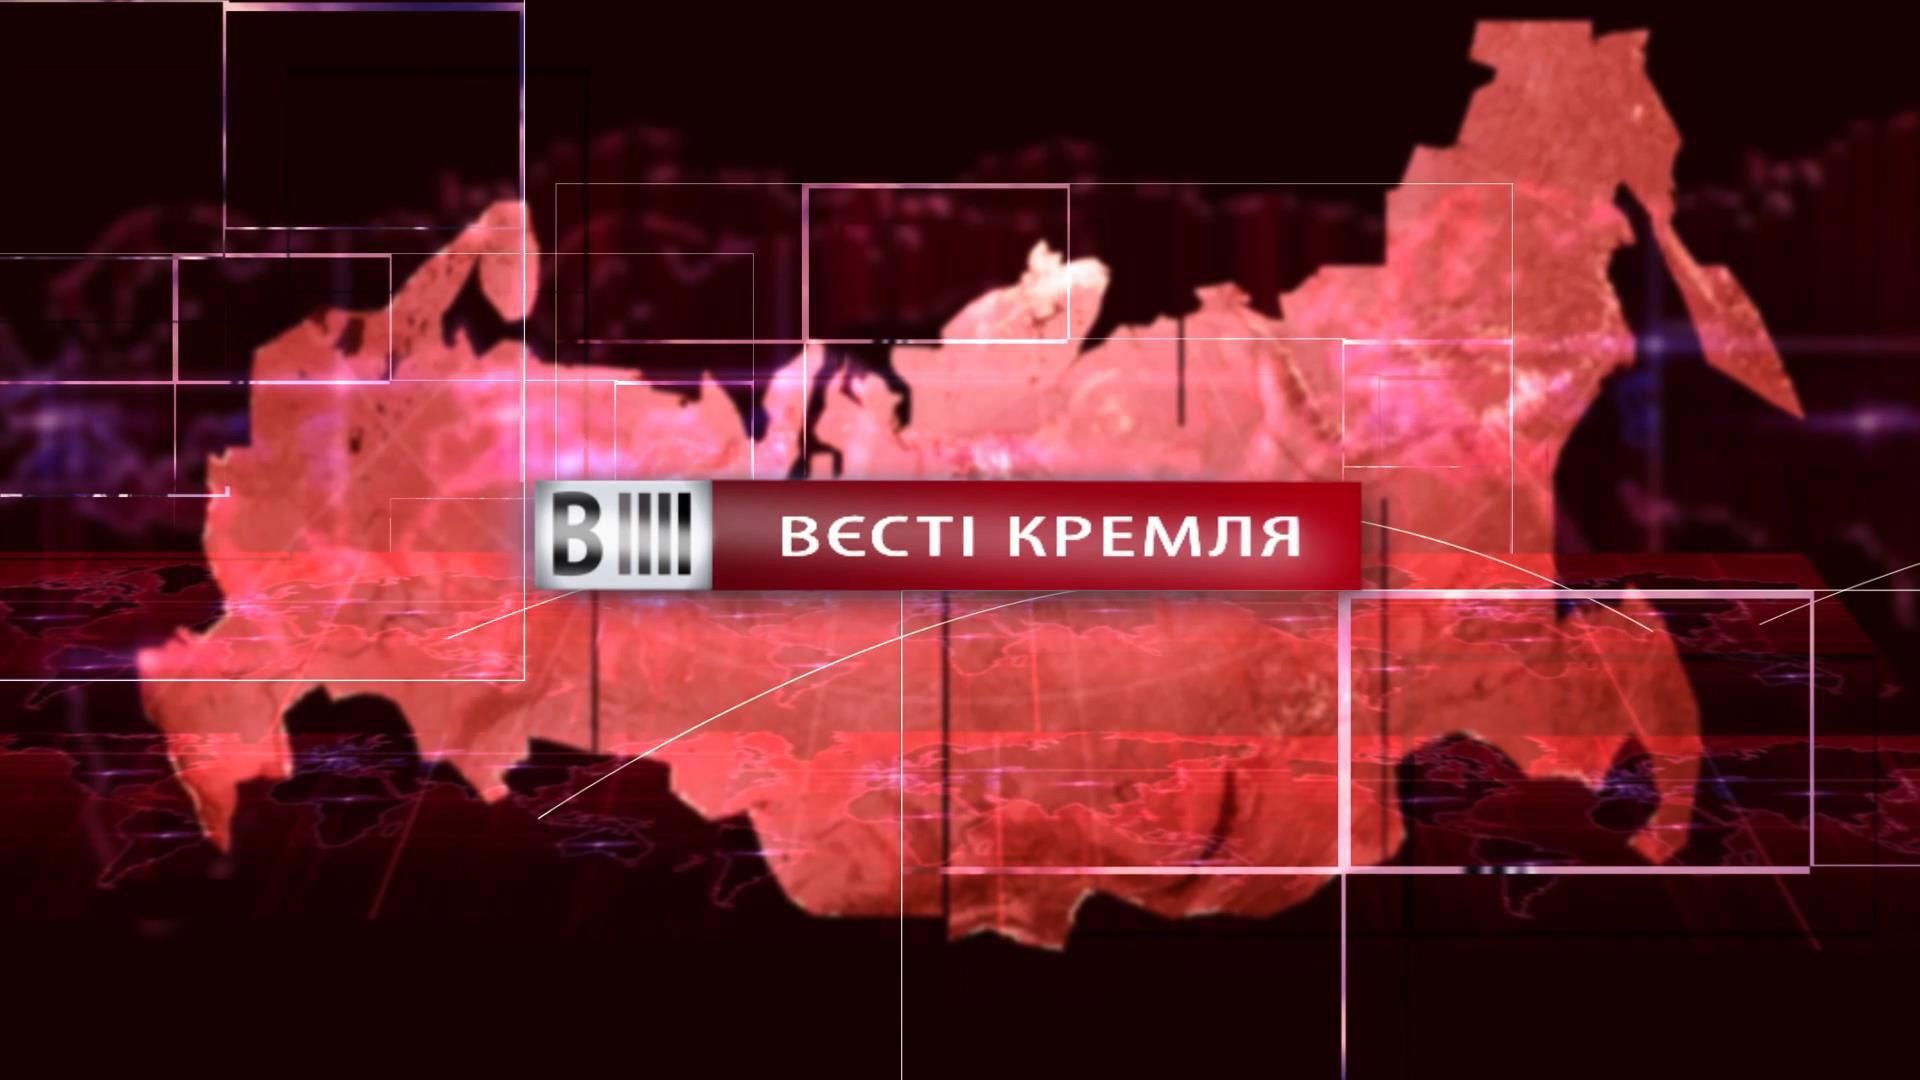 Дивіться "Вєсті Кремля". Недалекий кінець Путіна. Хрест на комунізмі в Росії